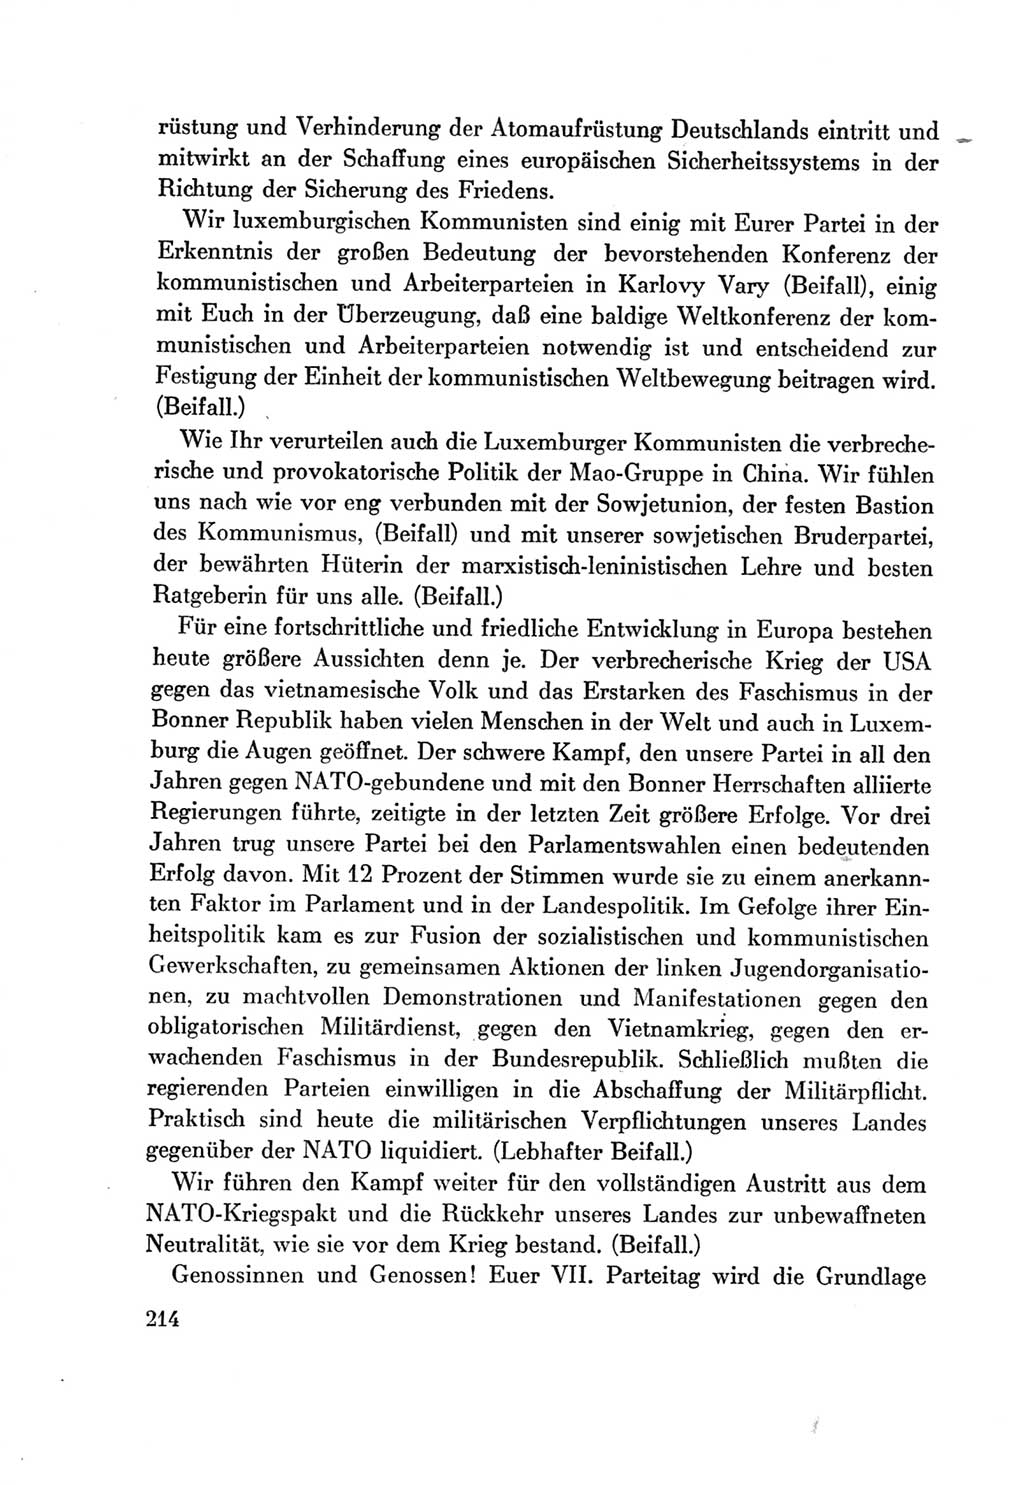 Protokoll der Verhandlungen des Ⅶ. Parteitages der Sozialistischen Einheitspartei Deutschlands (SED) [Deutsche Demokratische Republik (DDR)] 1967, Band Ⅱ, Seite 214 (Prot. Verh. Ⅶ. PT SED DDR 1967, Bd. Ⅱ, S. 214)